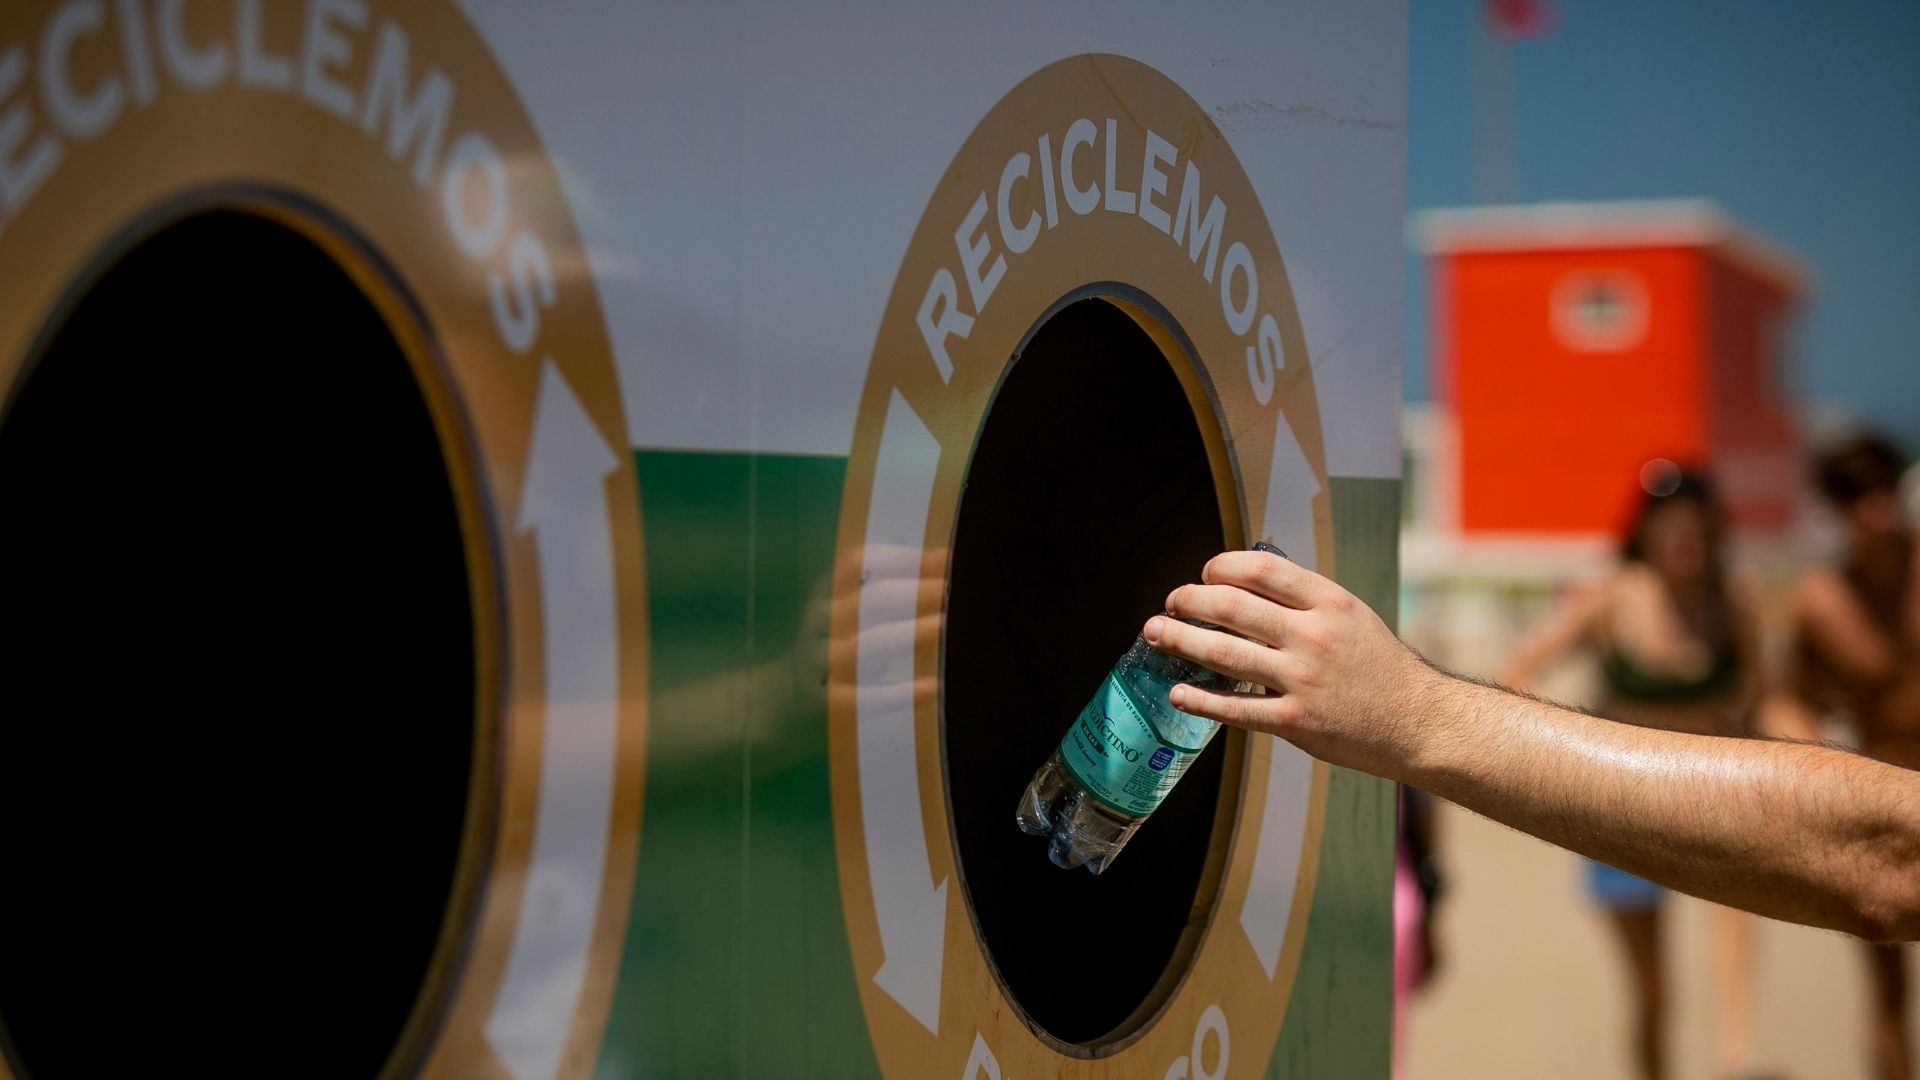 Mi Playa Sin Residuos busca concientizar sobre el valor de los envases retornables y reciclables (Crédito: Prensa Coca-Cola)